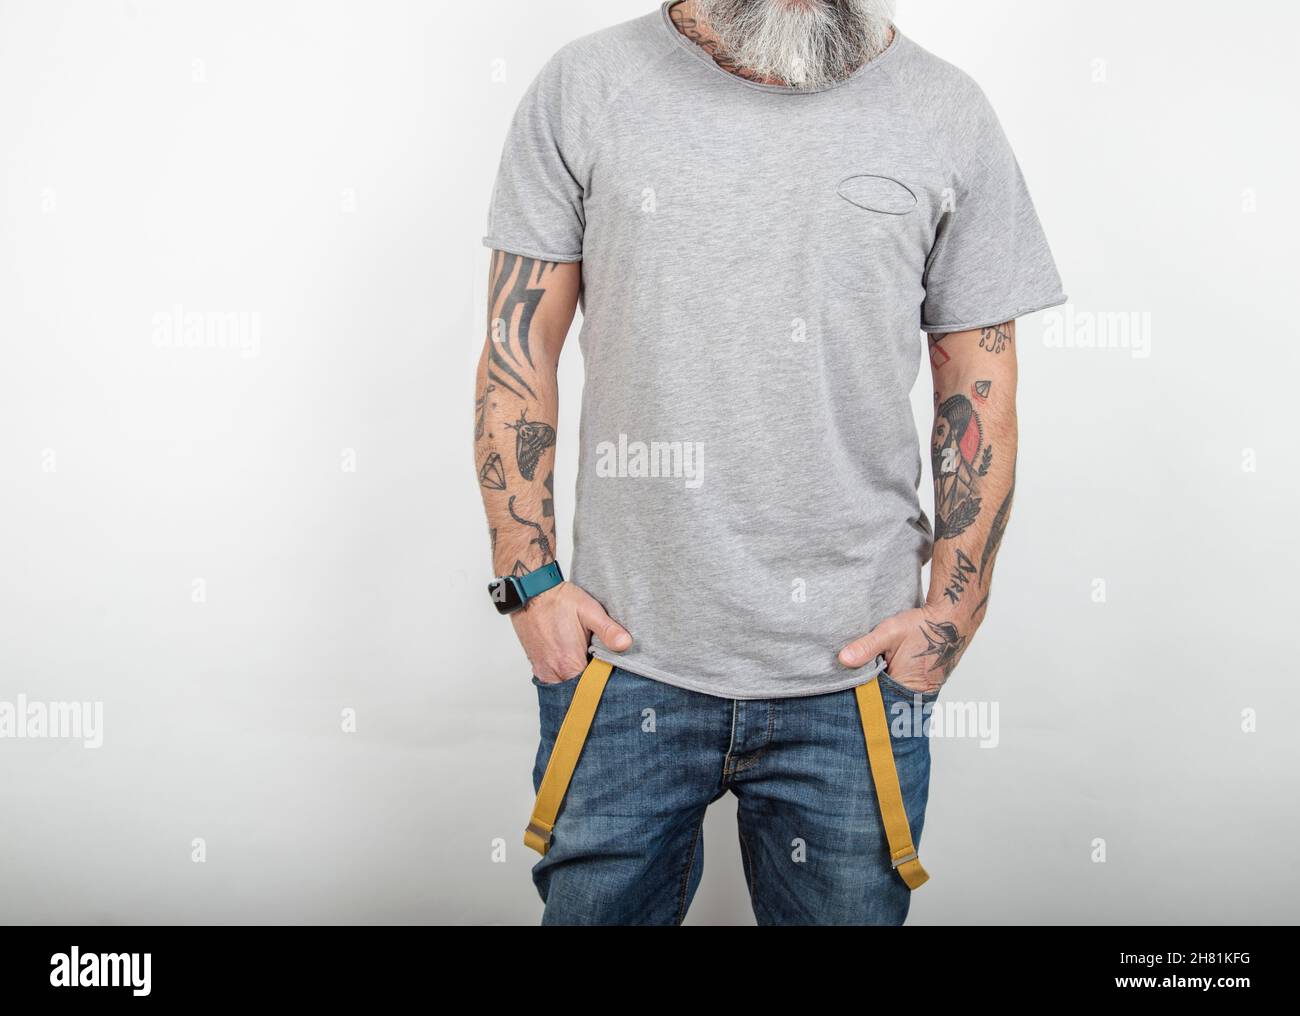 L'homme tatoué à barbe pose sur un Jean avec bretelles et un t-shirt en coton gris à manches courtes, sur fond blanc. Banque D'Images